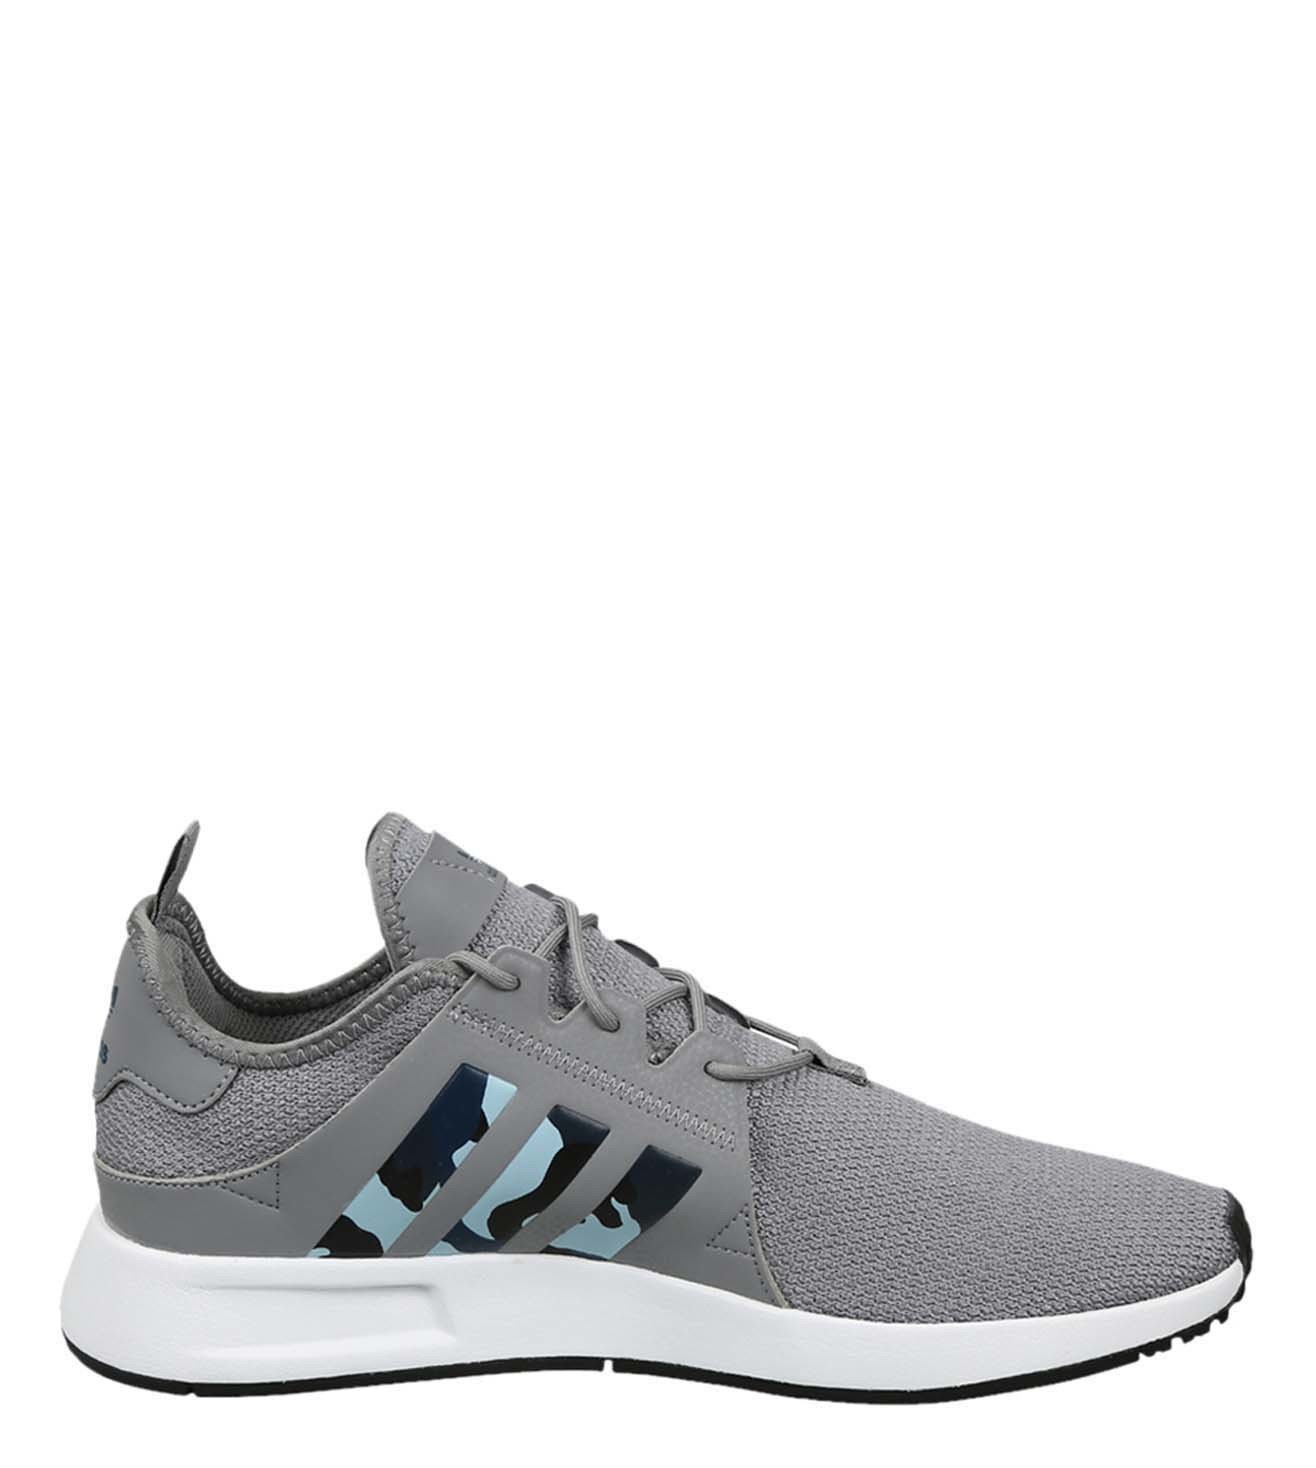 adidas originals men's x_plr shoes grey